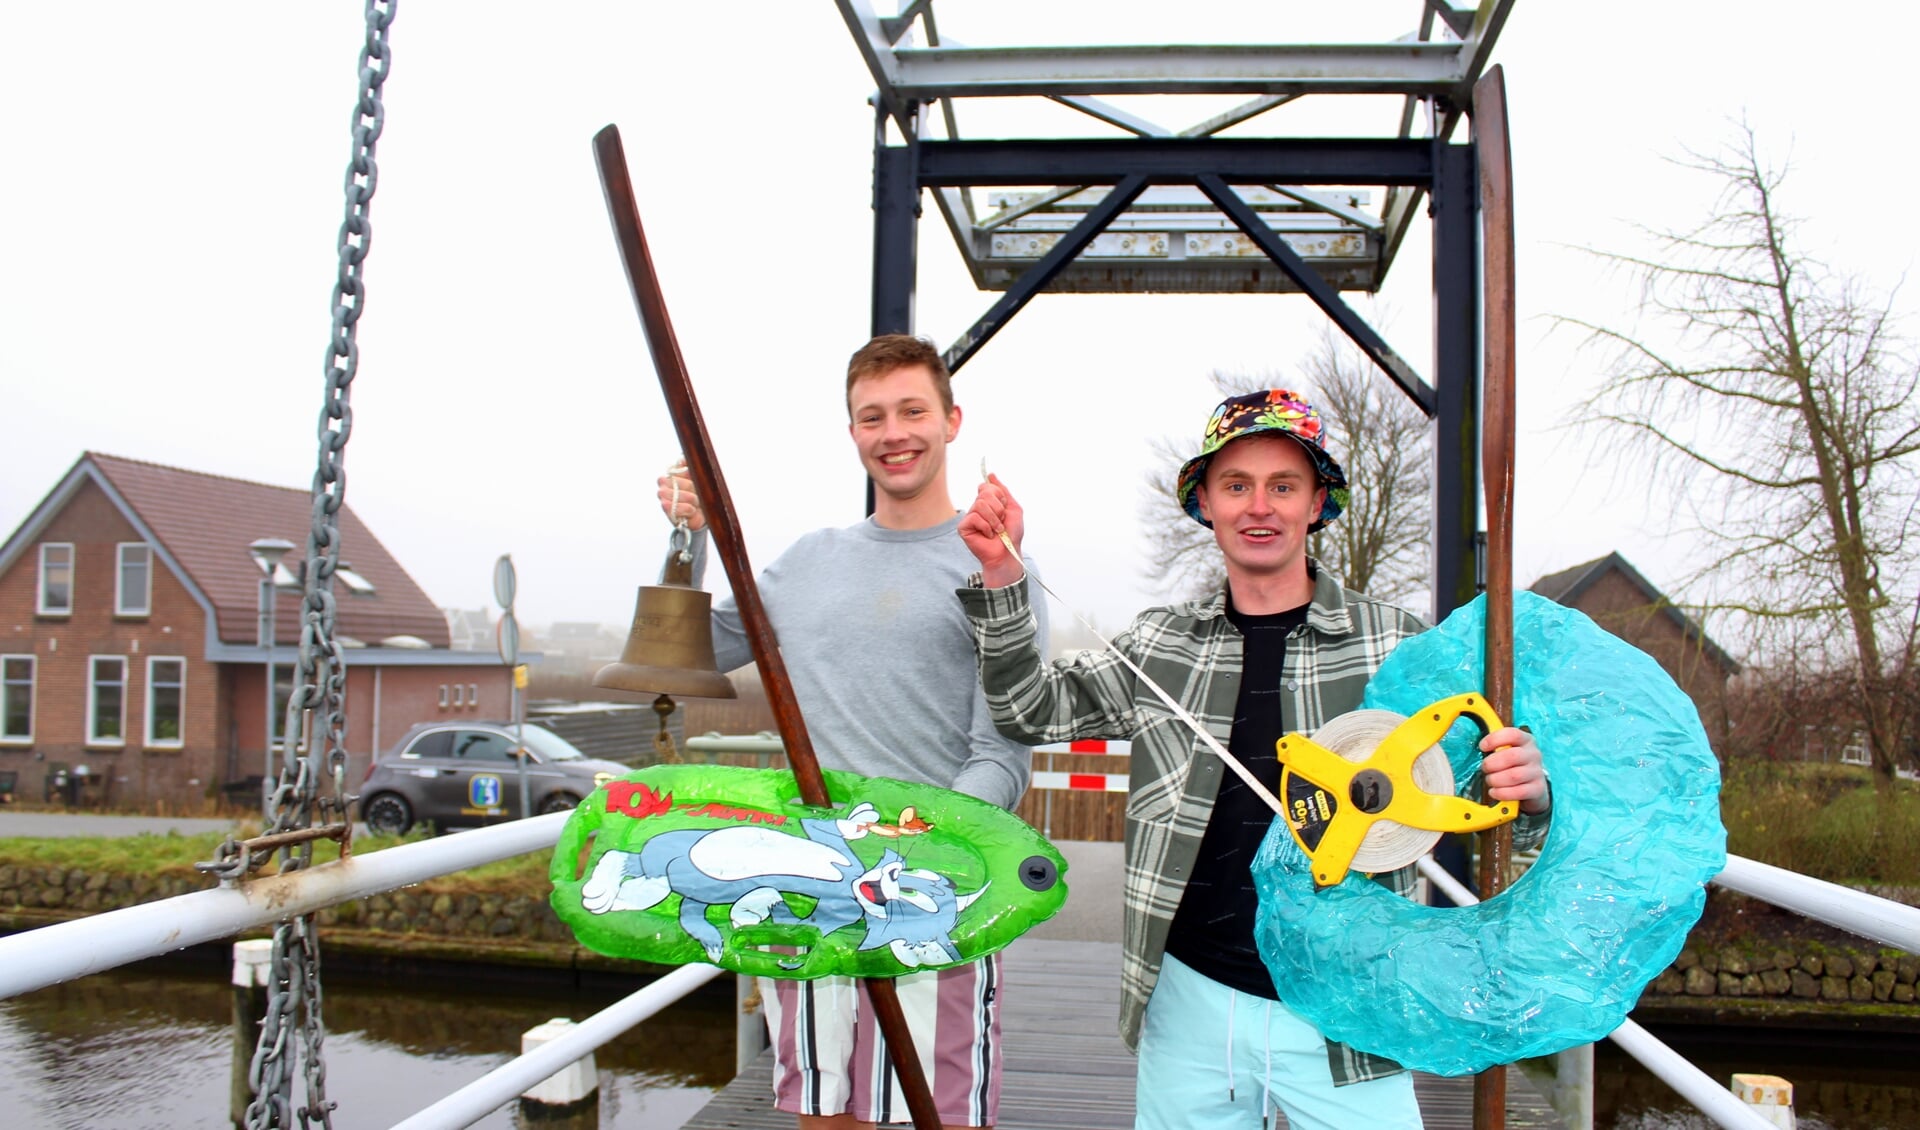 Mike Verlaan (met zonnehoed) en Joost Vurens organiseren met vrienden het waterspektakel Te land, ter zee en in 't kroos. Meer hierover in de openingsuitzending van Boskoop 800 op 4 februari.